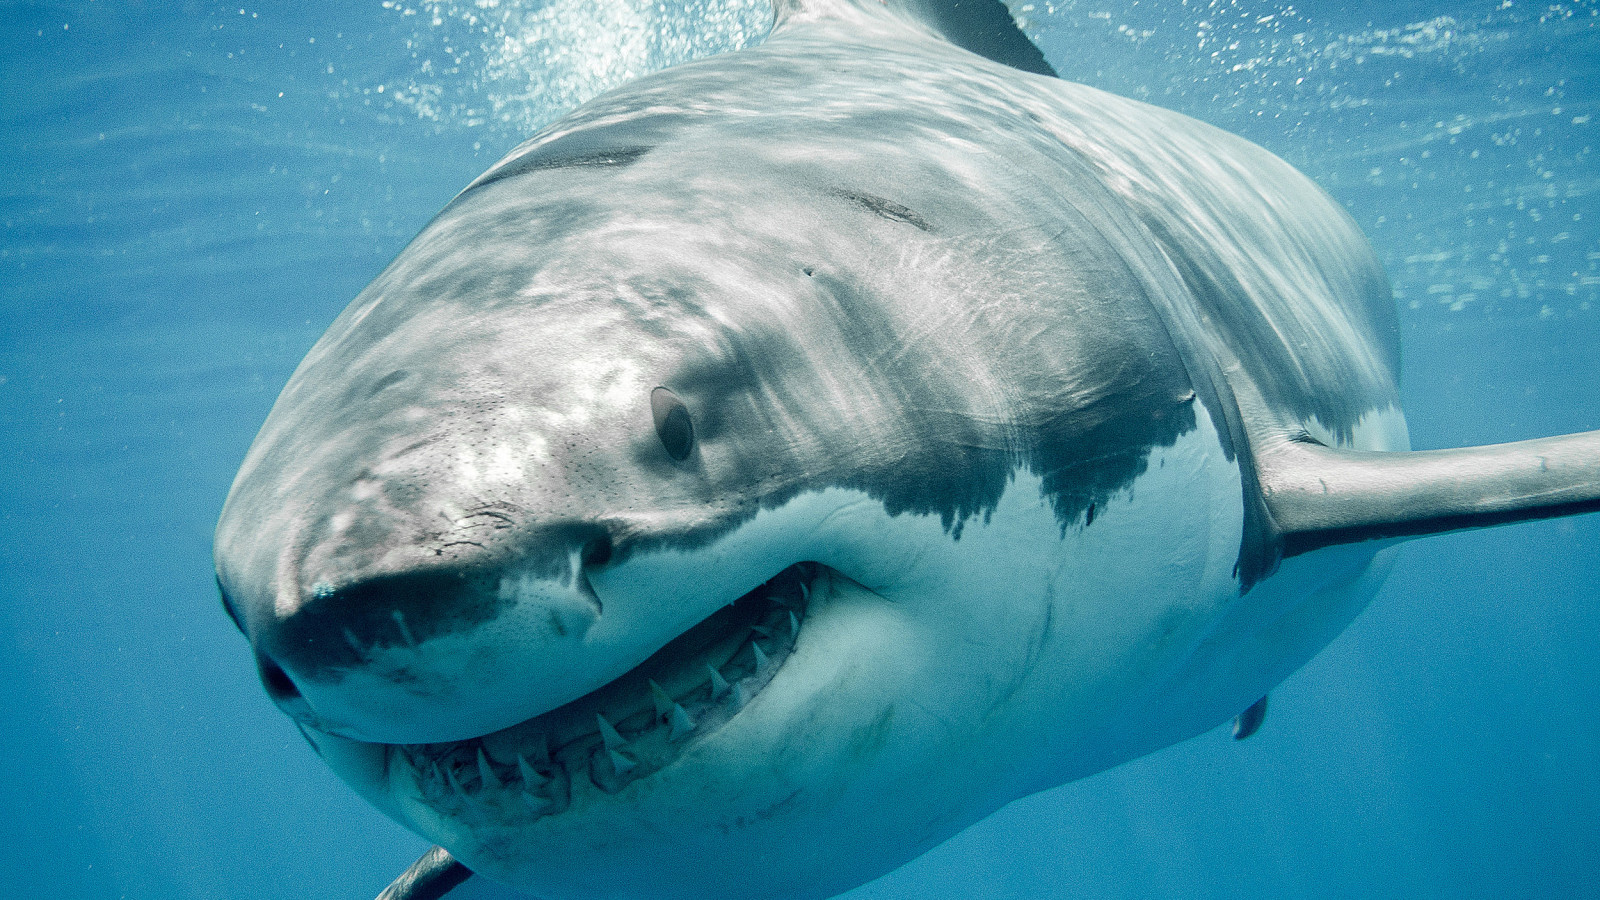 Σοκαριστικό video: Λευκός καρχαρίας κατασπαράζει λευκό καρχαρία (Προσοχή: Σκληρές εικόνες)